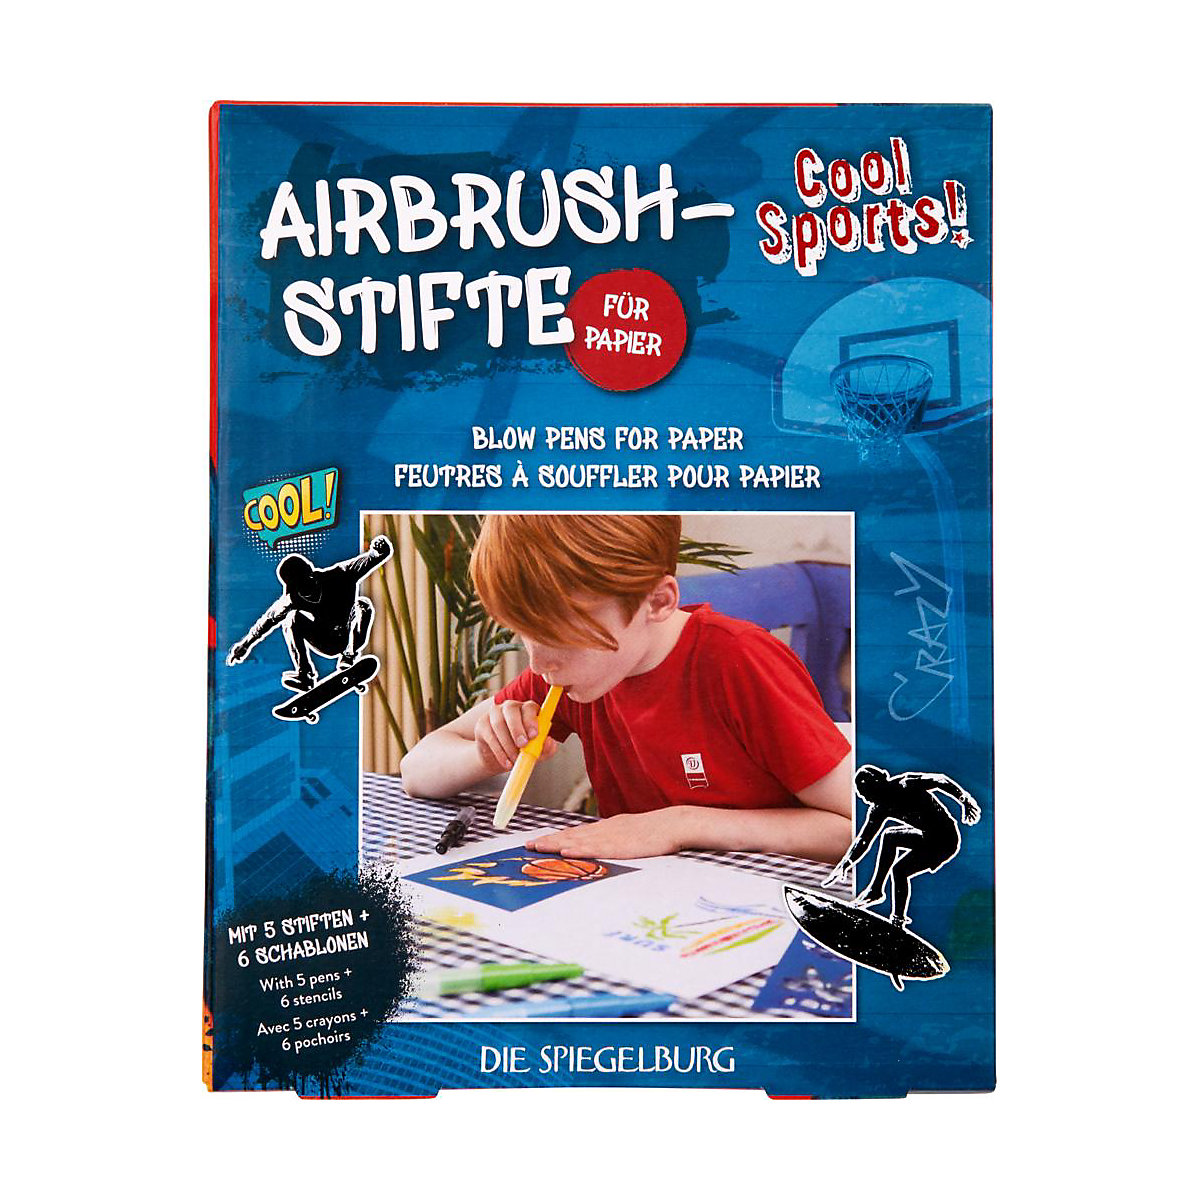 Die Spiegelburg Airbrush-Stifte für Papier Cool Sports!